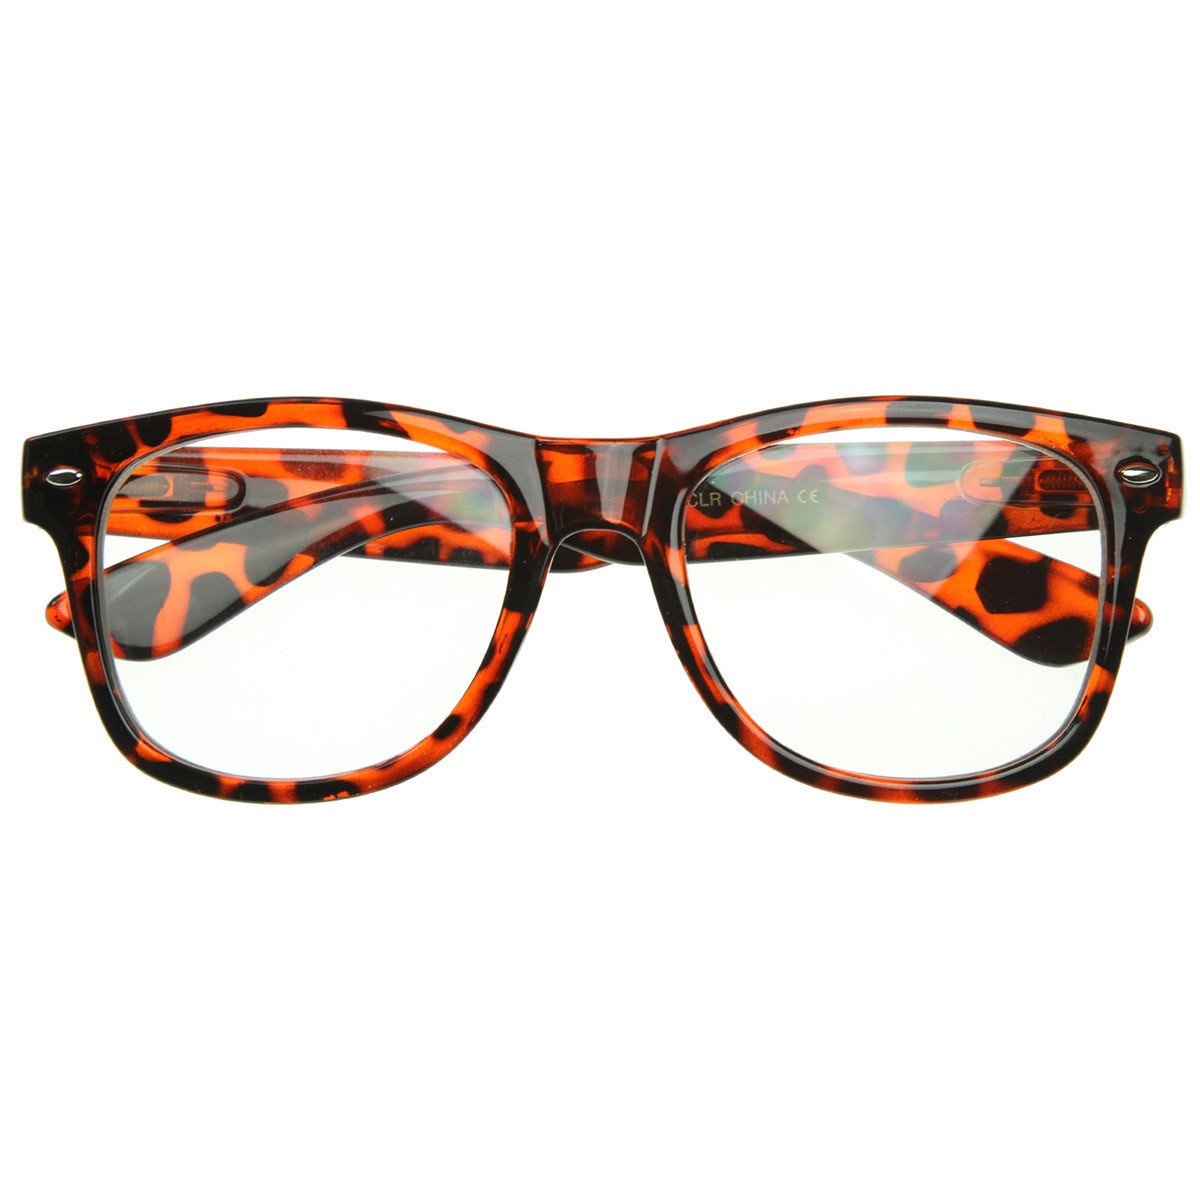 Standard Retro Clear Lens Nerd Geek Assorted Color Horned Rim Glasses - 2873 - Tortoise Shell